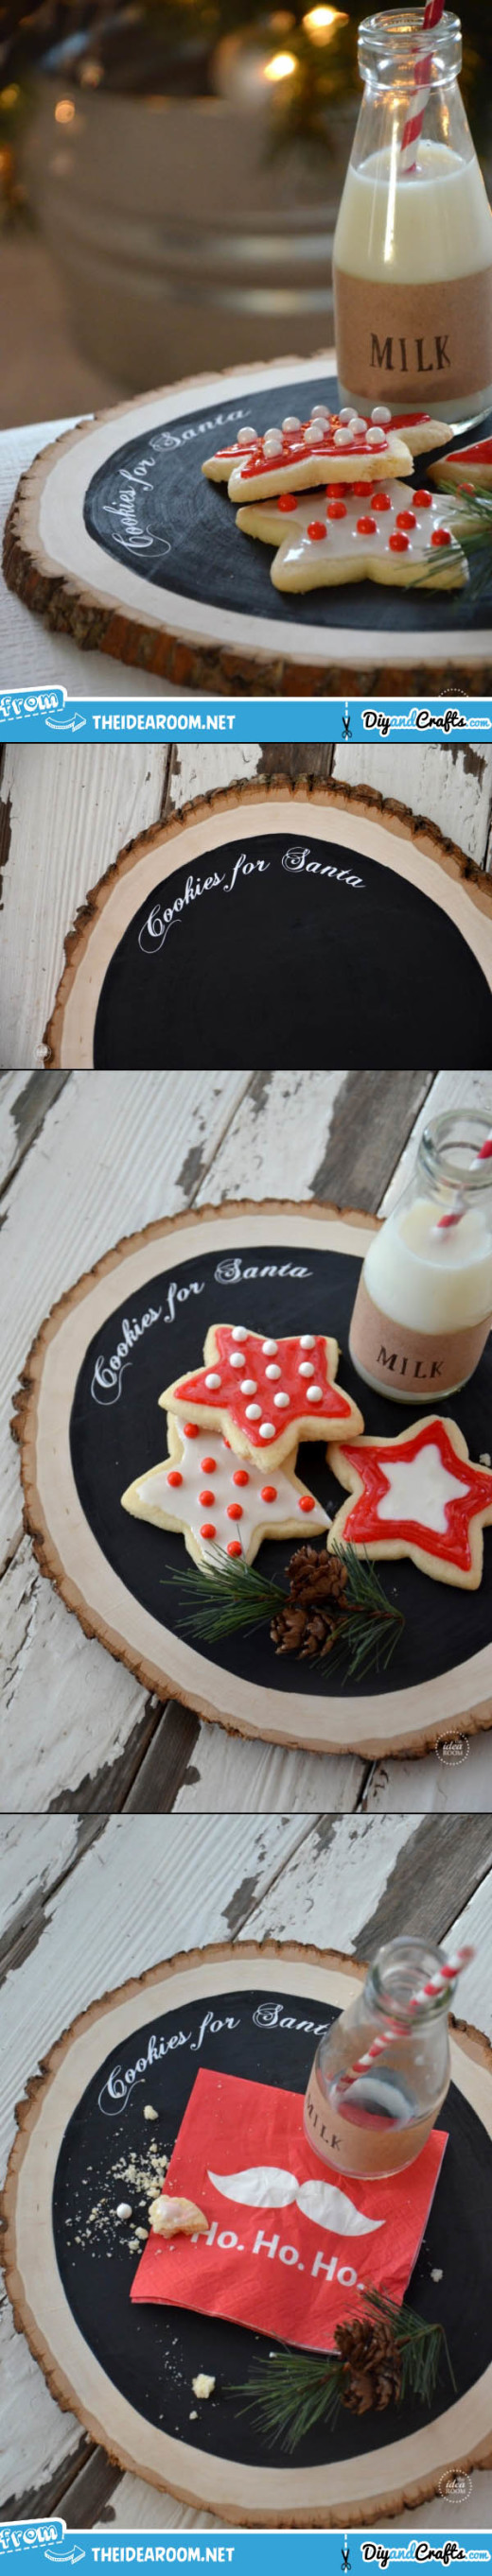 Cookies For Santa | Christmas